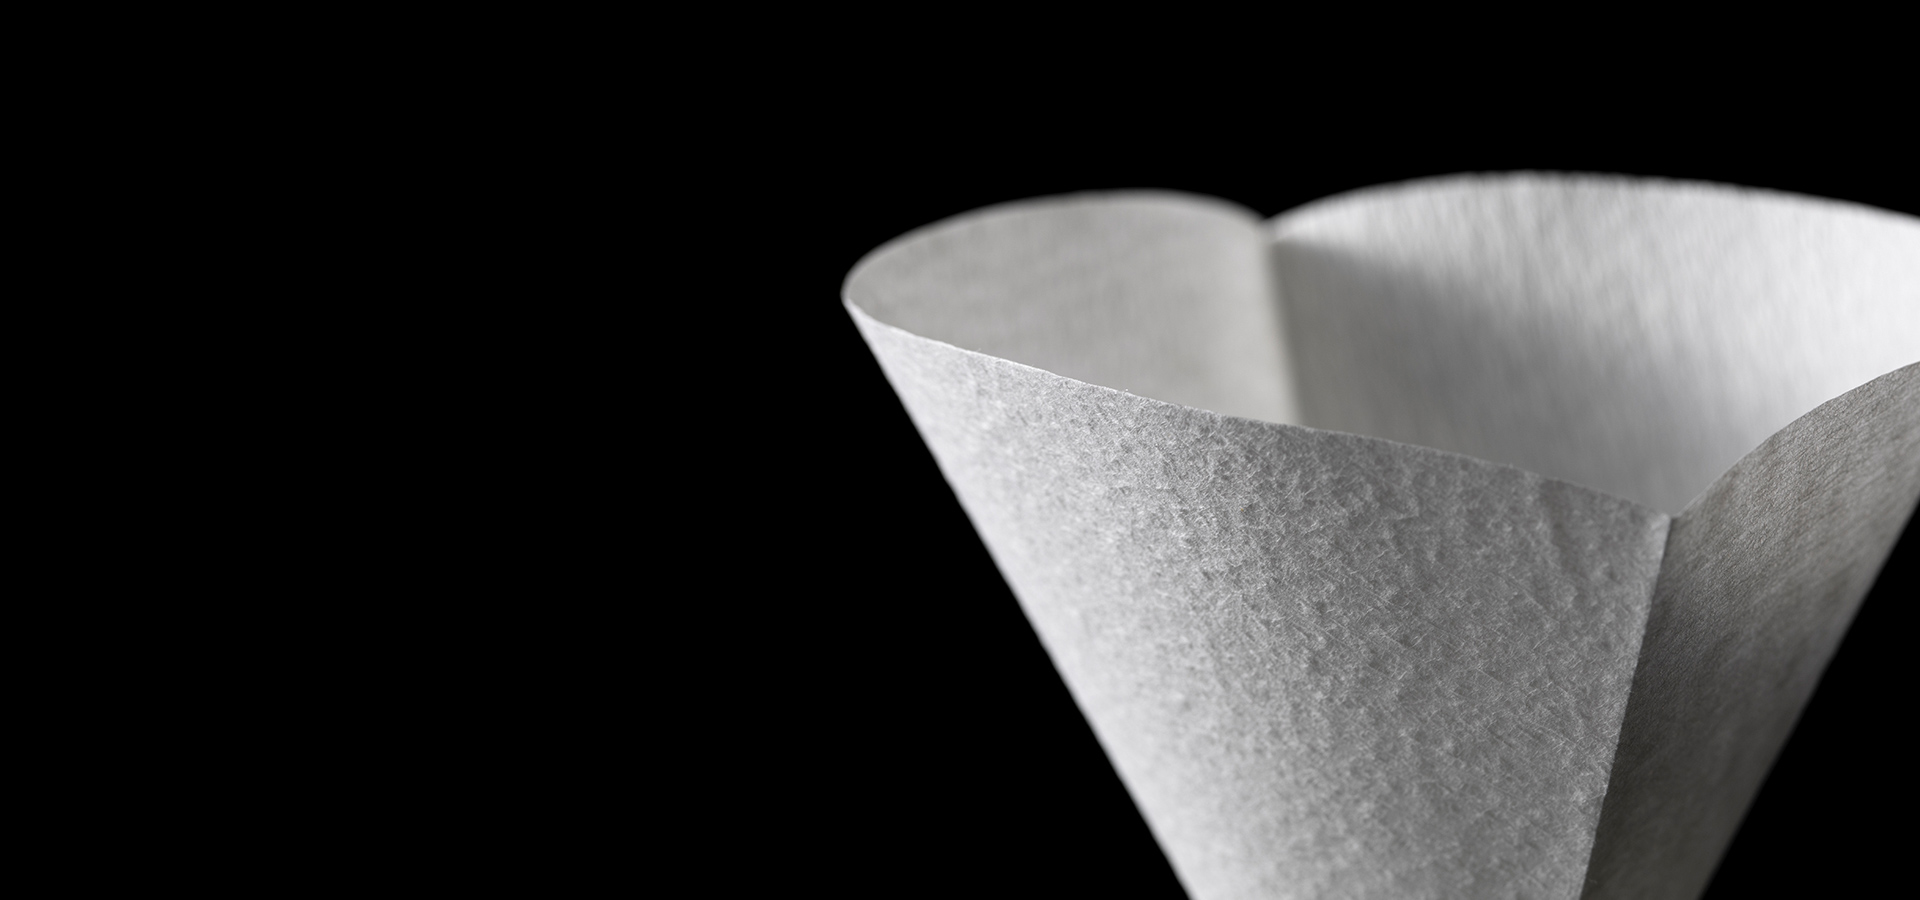 Existem vários tipos de filtros de papel para café. Os filtros de papel mais usados são os Cônicos, Trapezoidais e Fundo Plano (Wave).